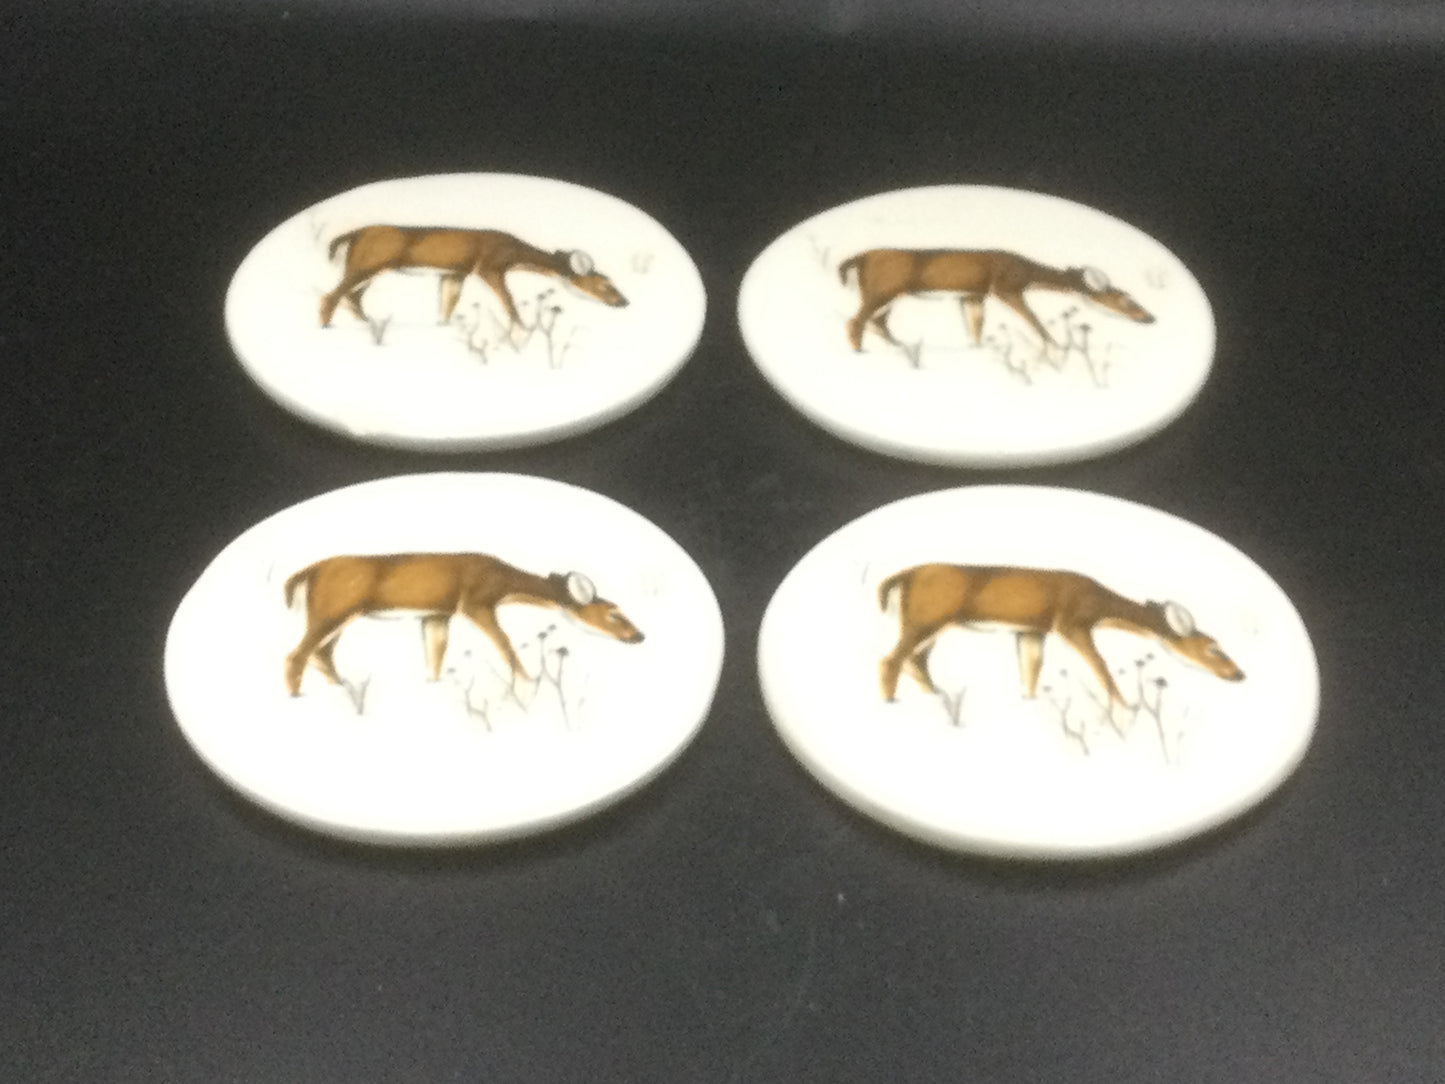 Vintage ceramic deer coasters